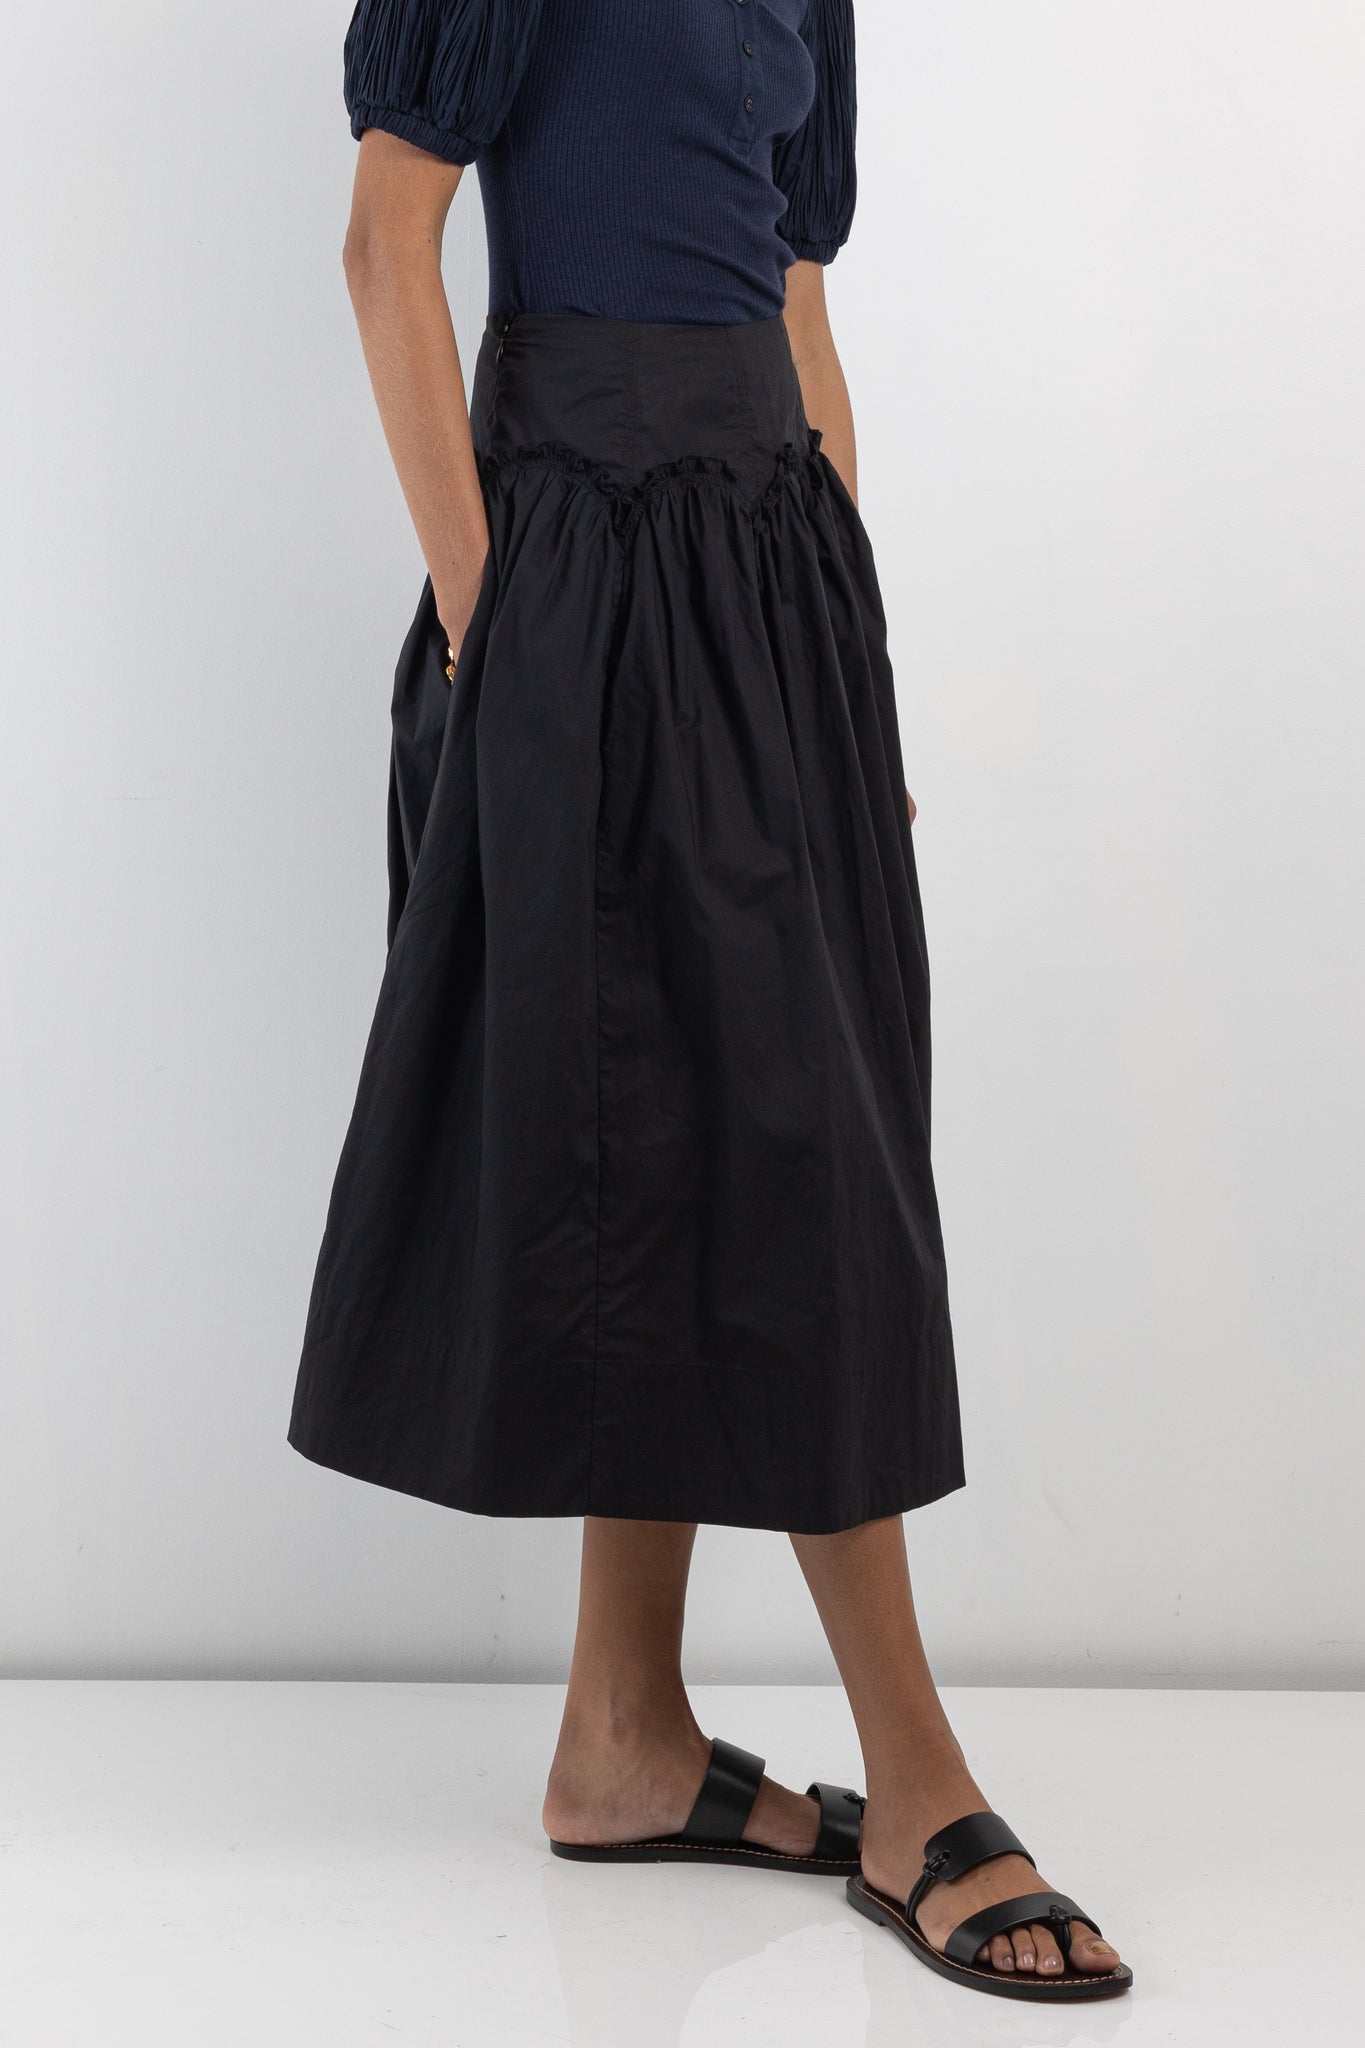 Womens skirt | Ulla Johnson Emmy Skirt | The Standard Store